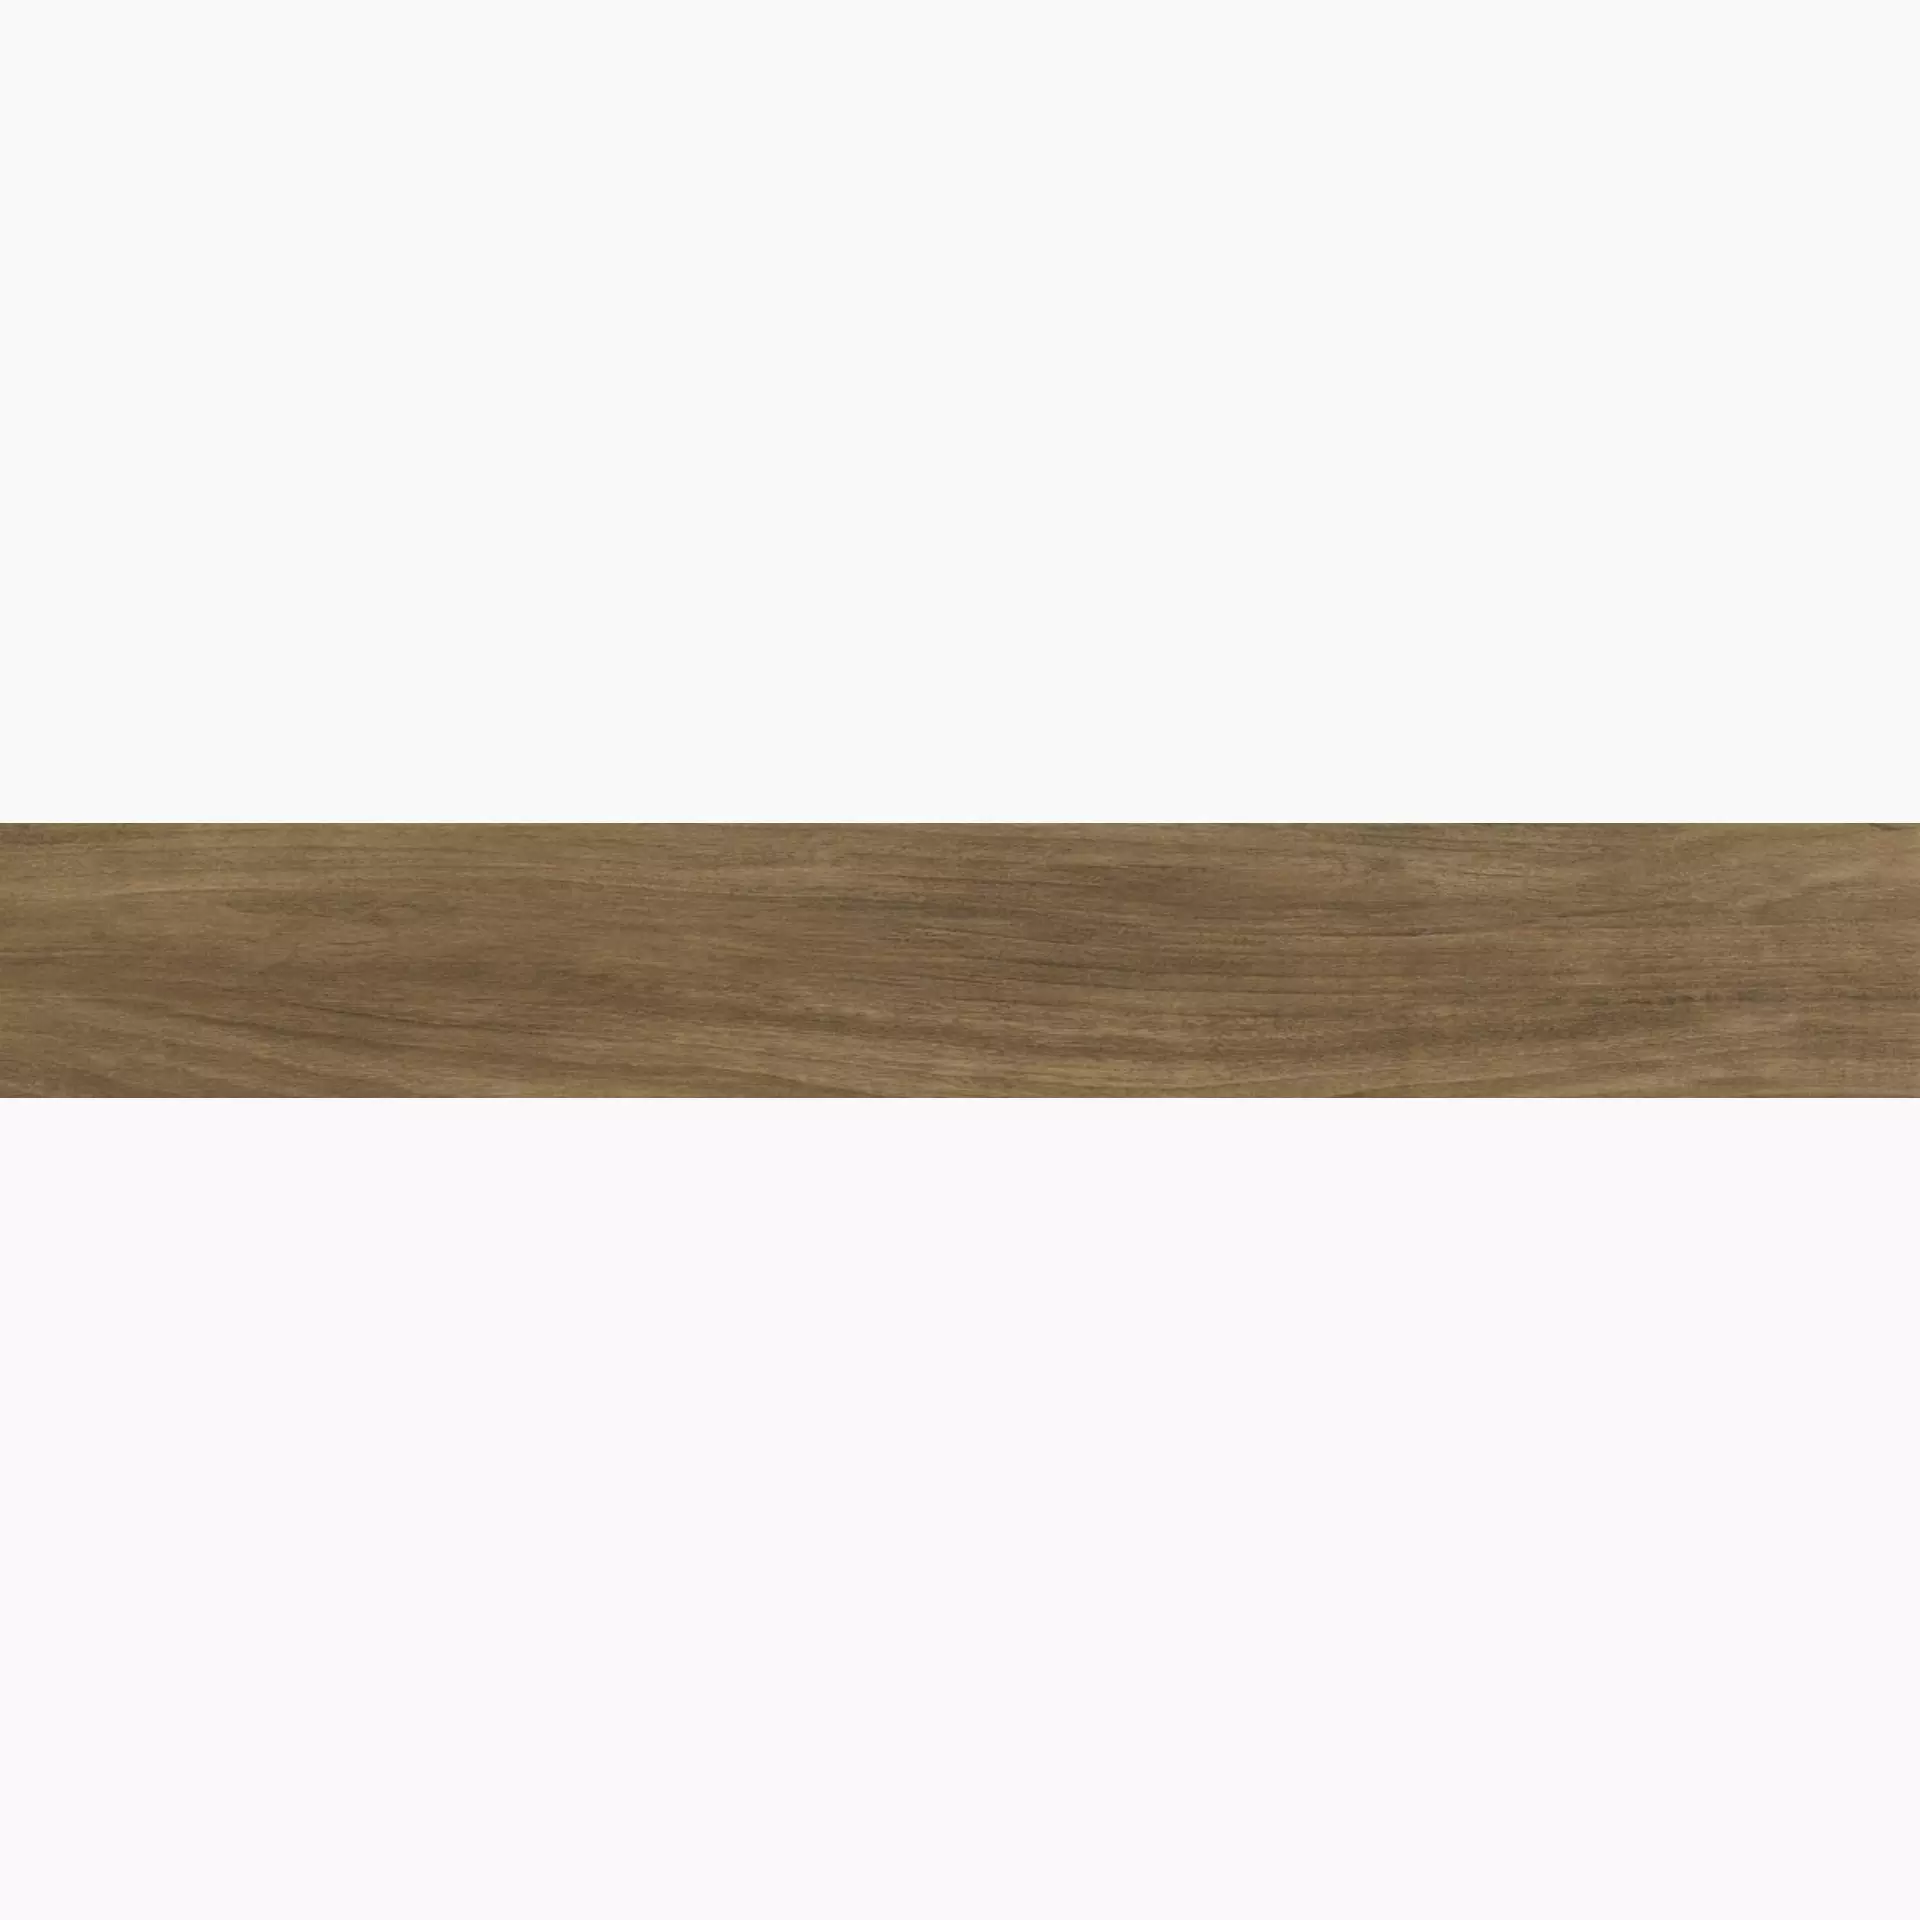 Ragno Woodessence Walnut Naturale – Matt R4MG naturale – matt 10x70cm 8mm